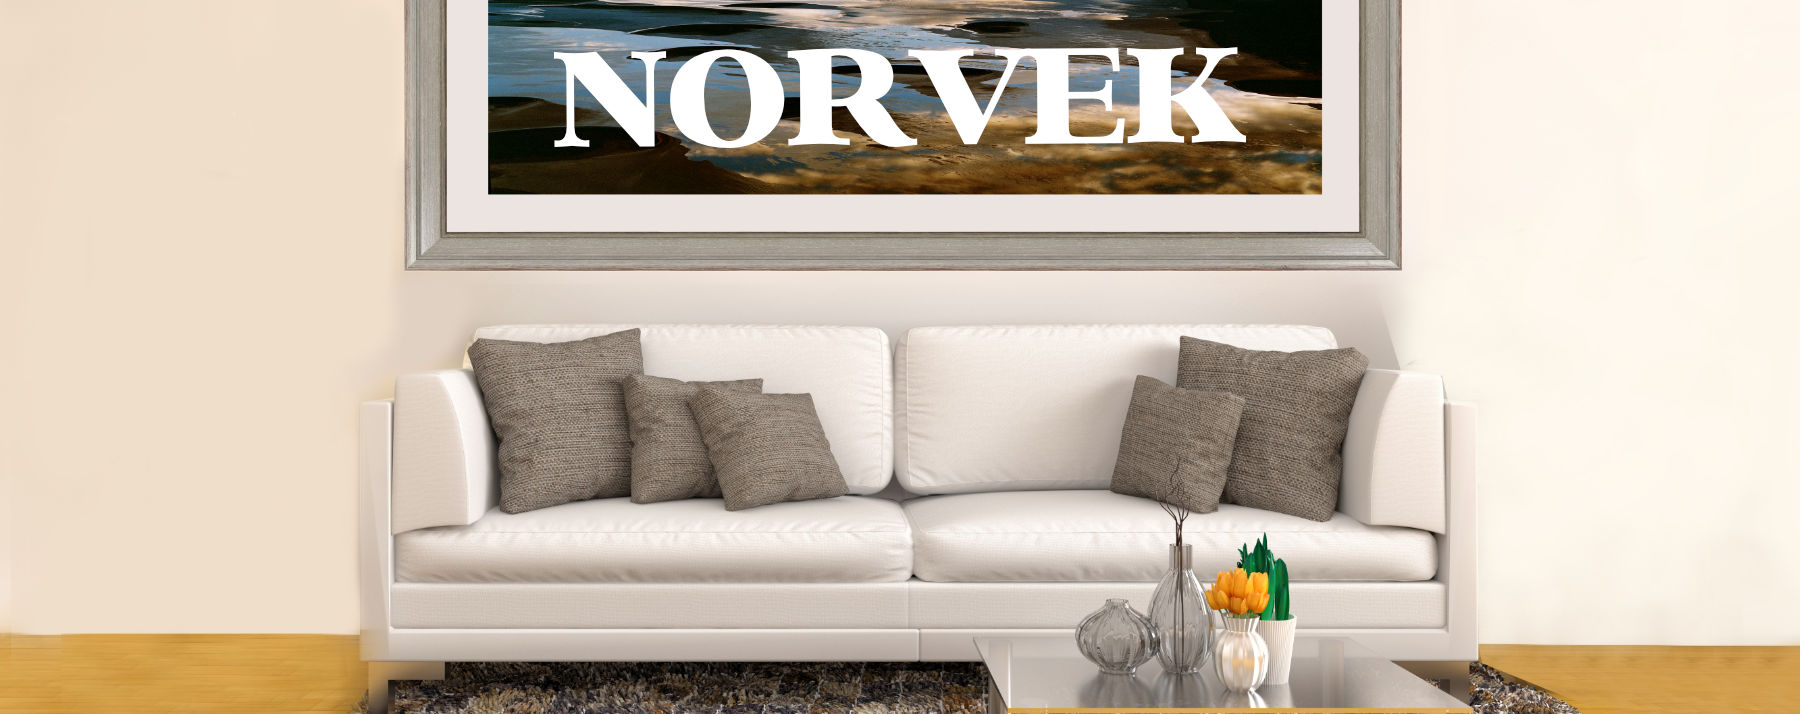 norvek-banner-home